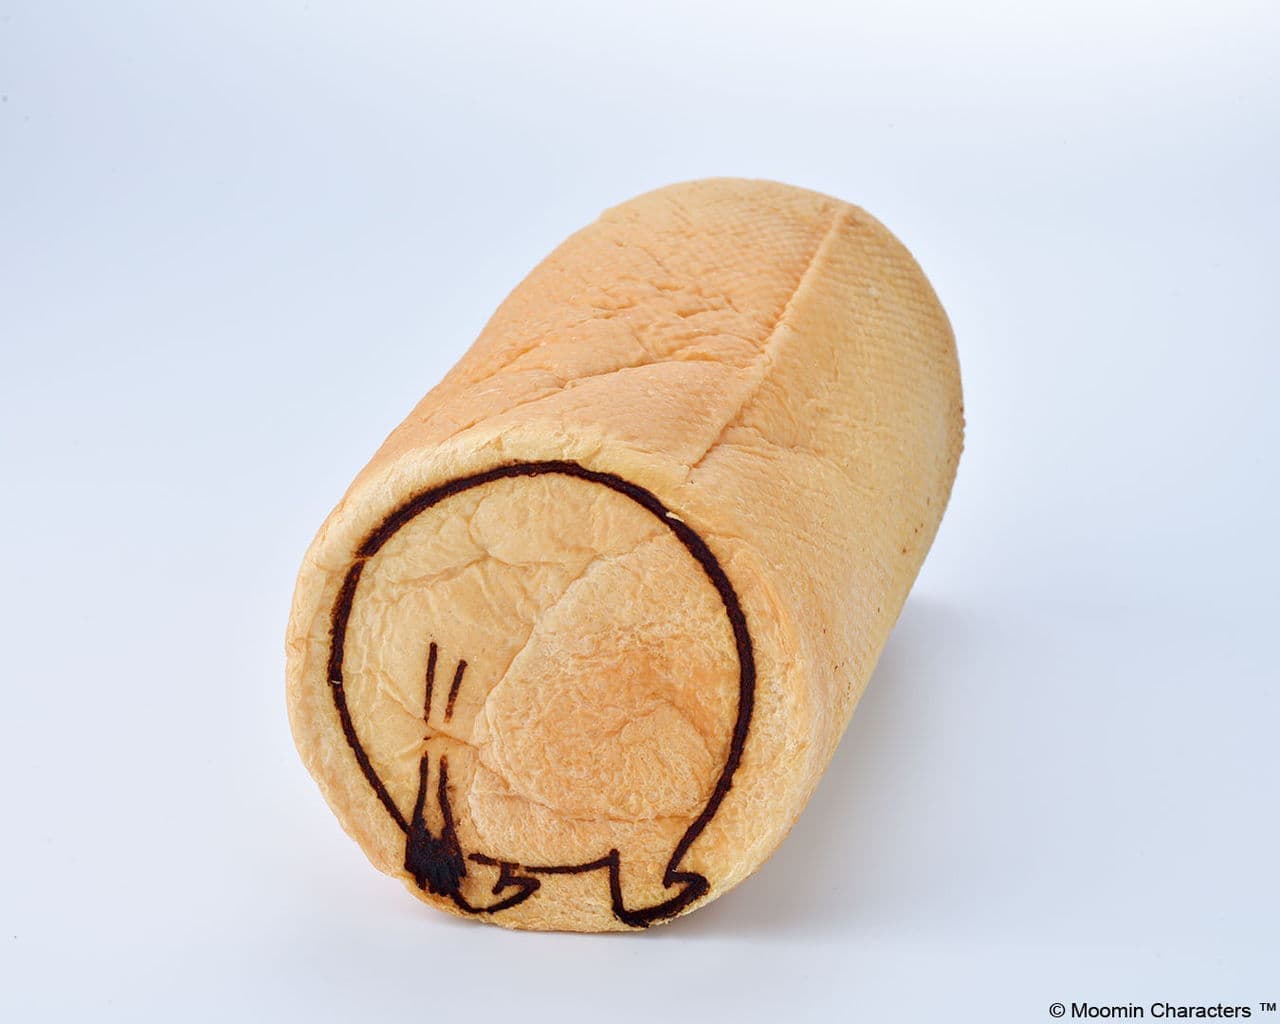 Moomin round buttocks bread